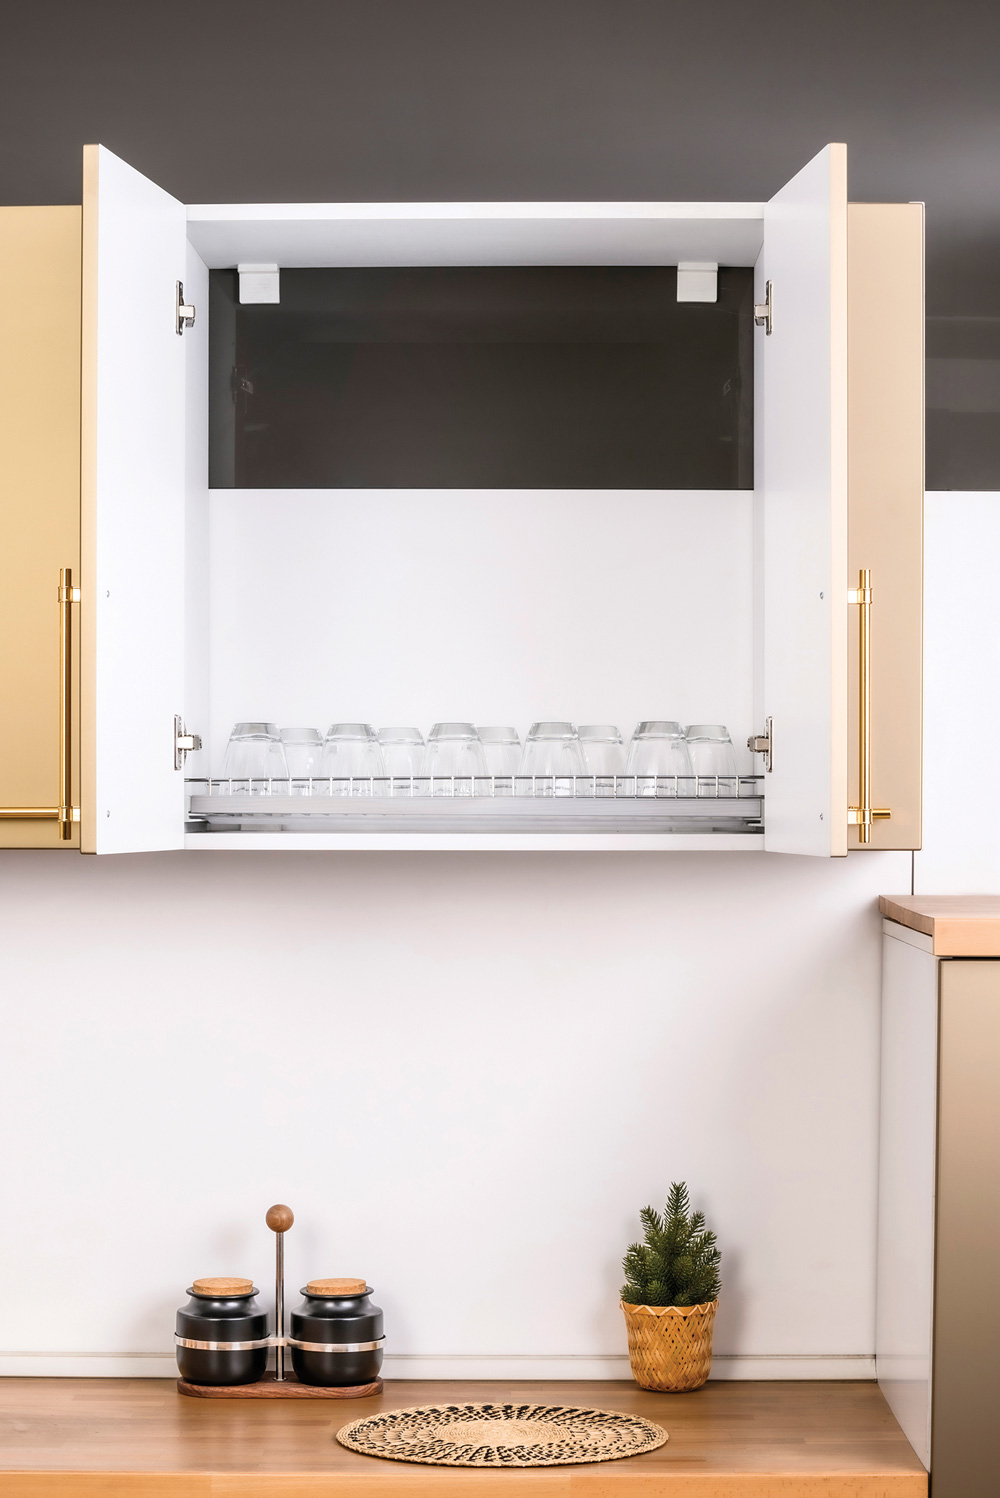 Aluminium Profiled Glass Shelf With Tray